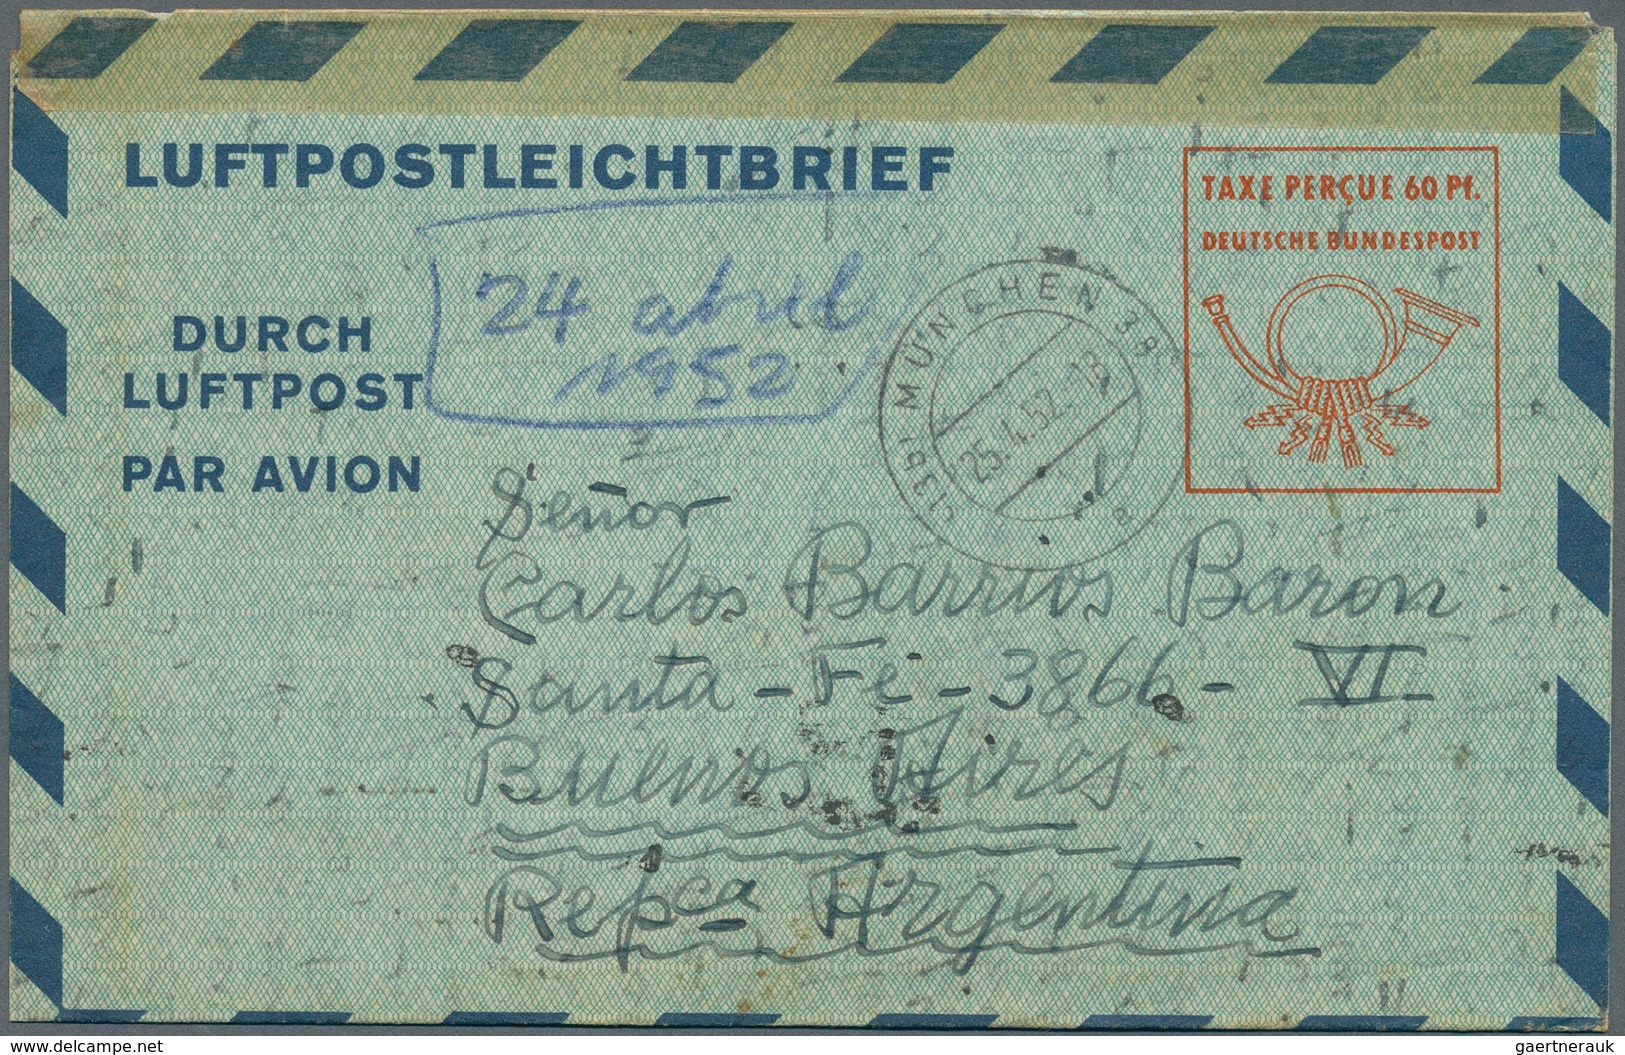 Deutschland: 1890-1960 ca.: Rund 100 Briefe und Postkarten aus der Zeit des deutschen Reiches sowie